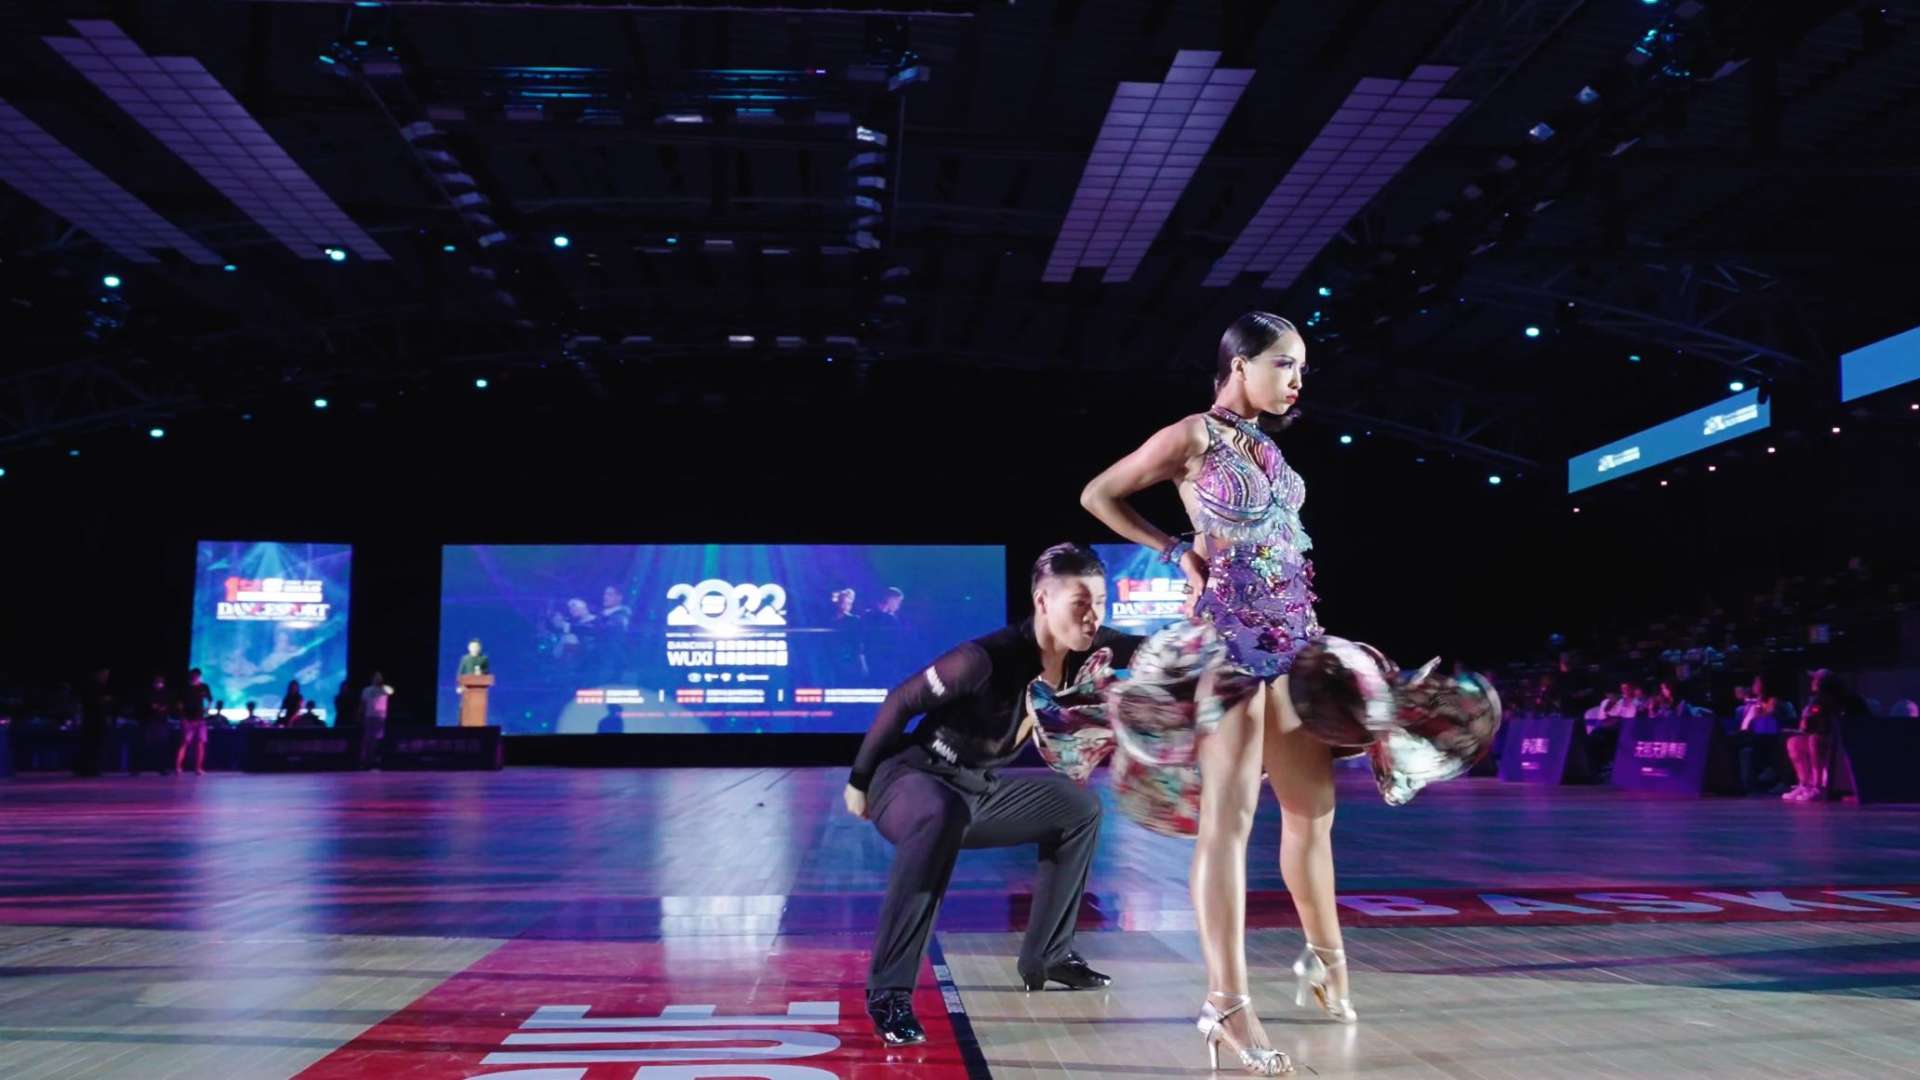 悦动锡城-无锡全民健身运动会体育舞蹈联赛-宣传视频4K